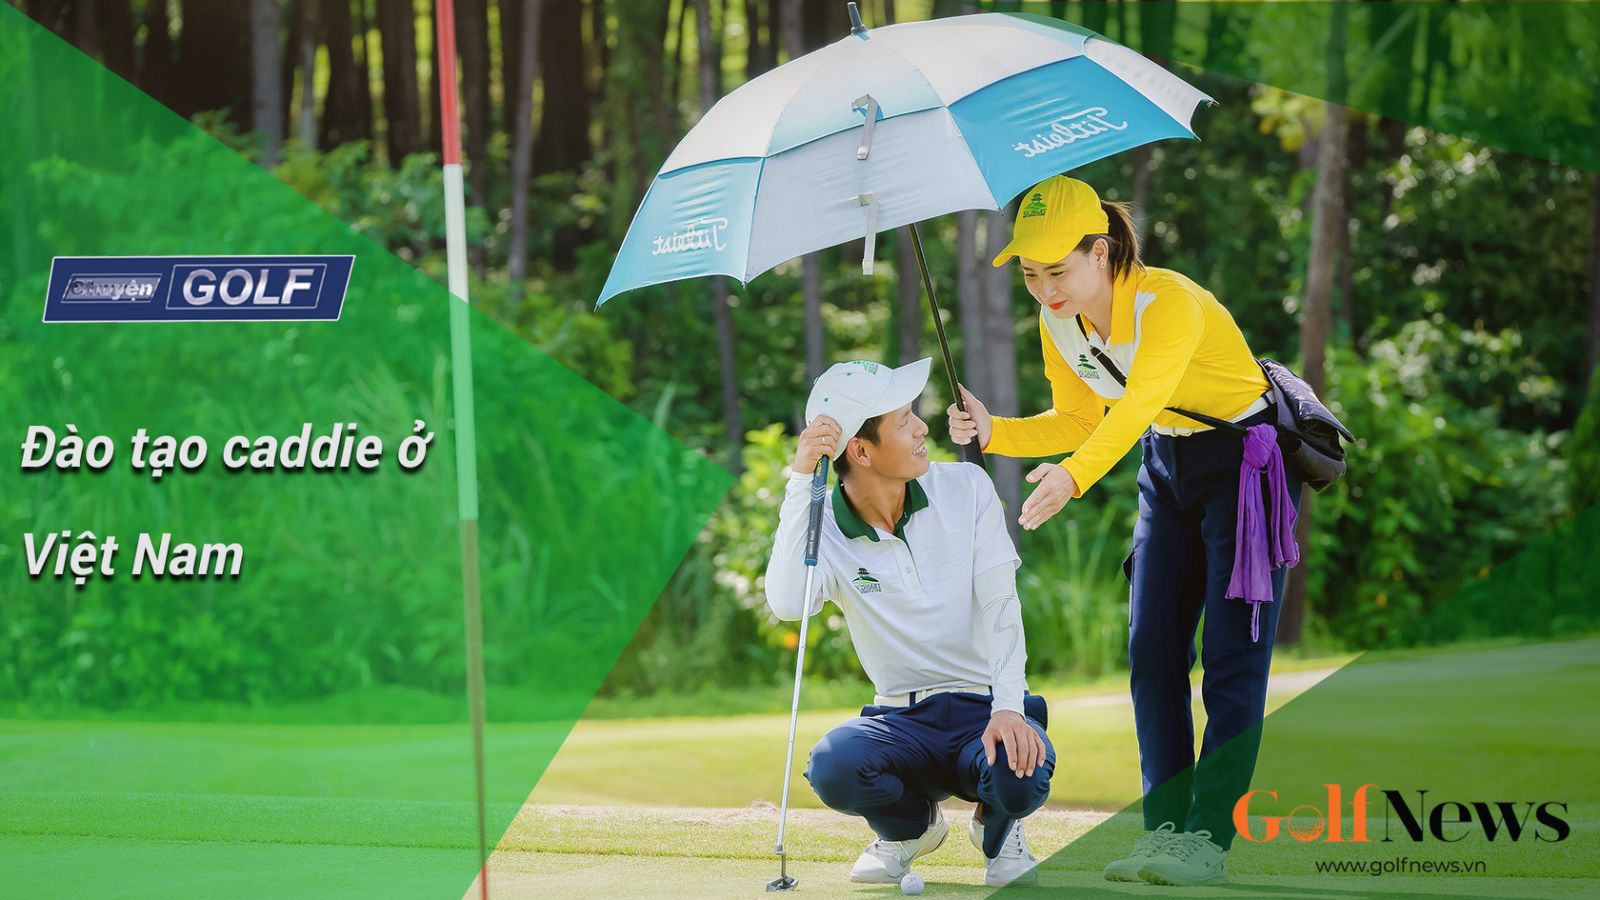 Chuyện Golf: Đào tạo Caddie ở Việt Nam